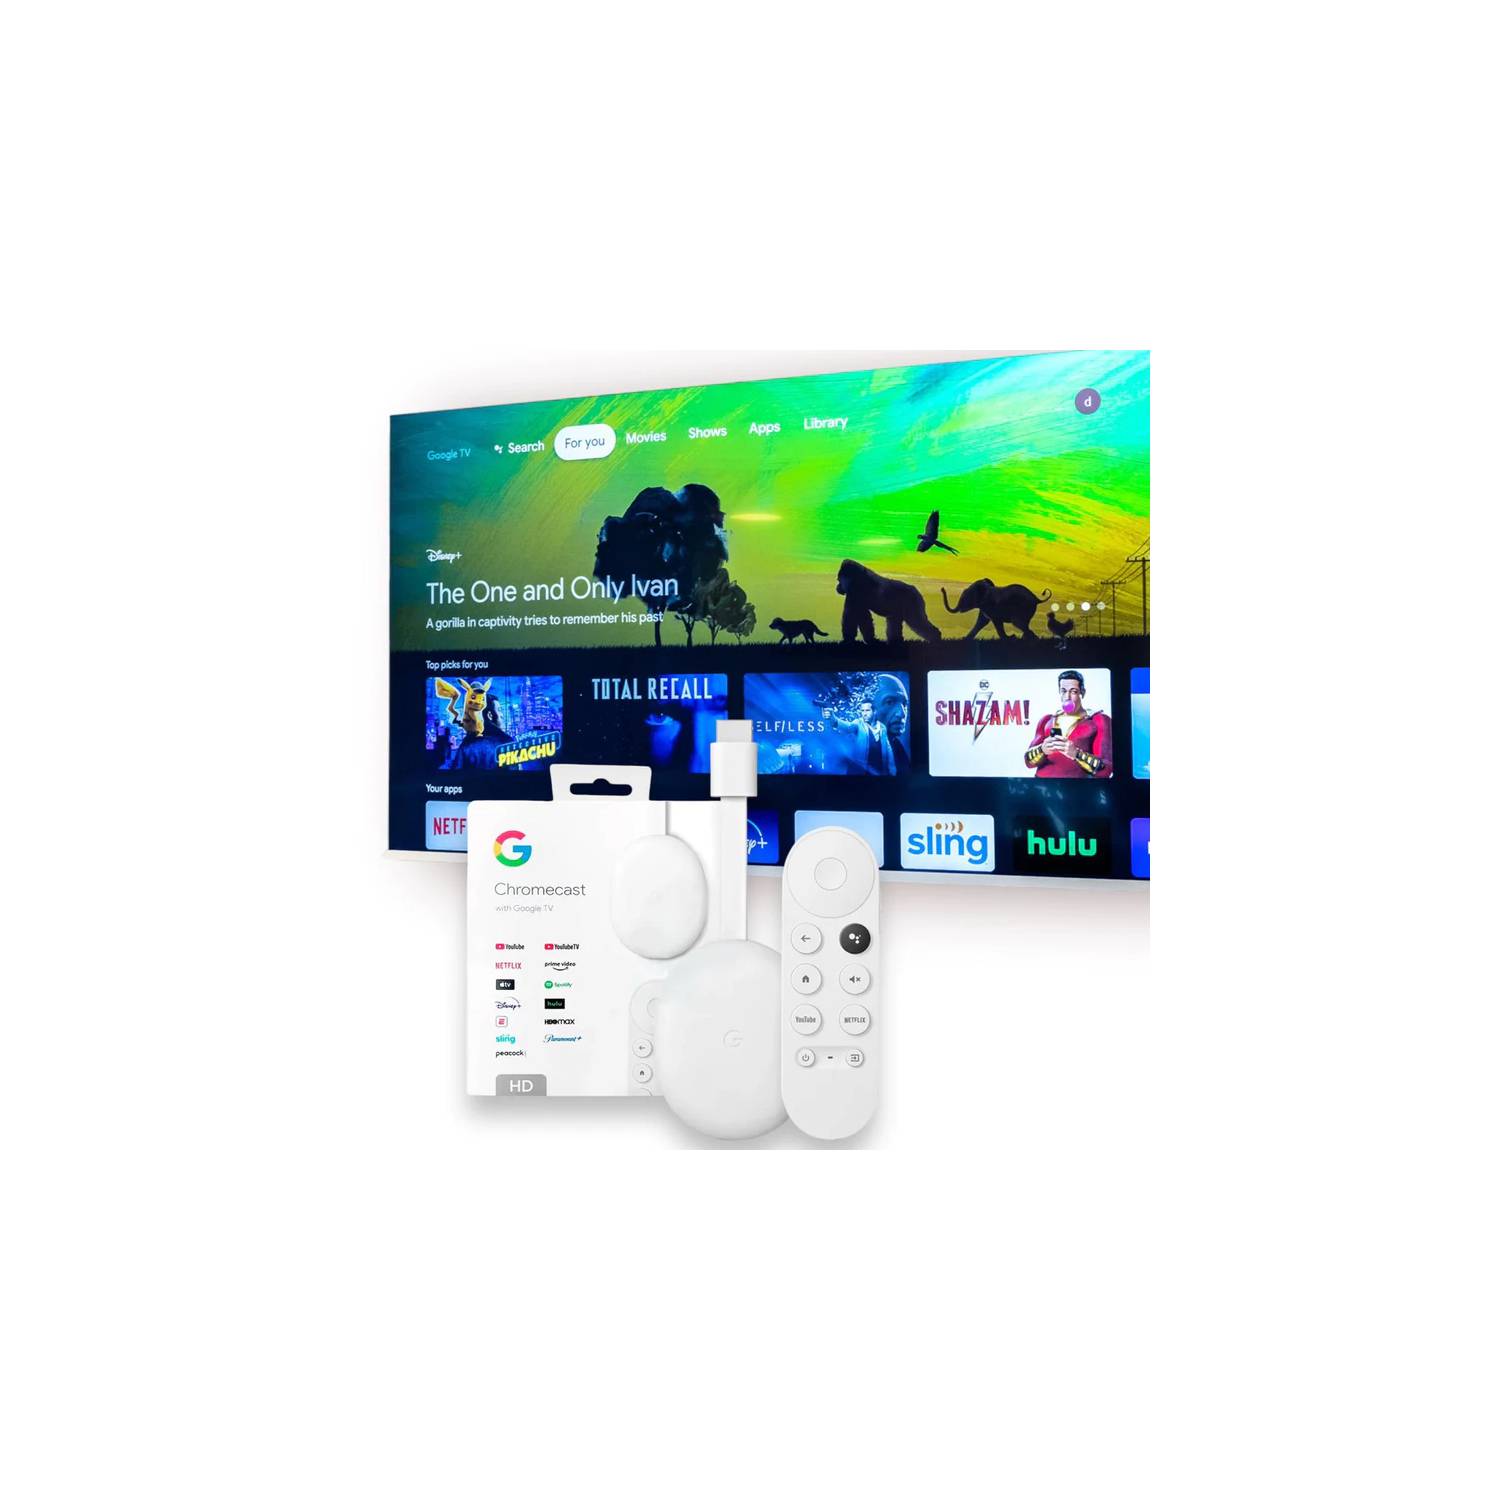 Google Chromecast Tv Hd Streaming Para Tv Con Control De Voz